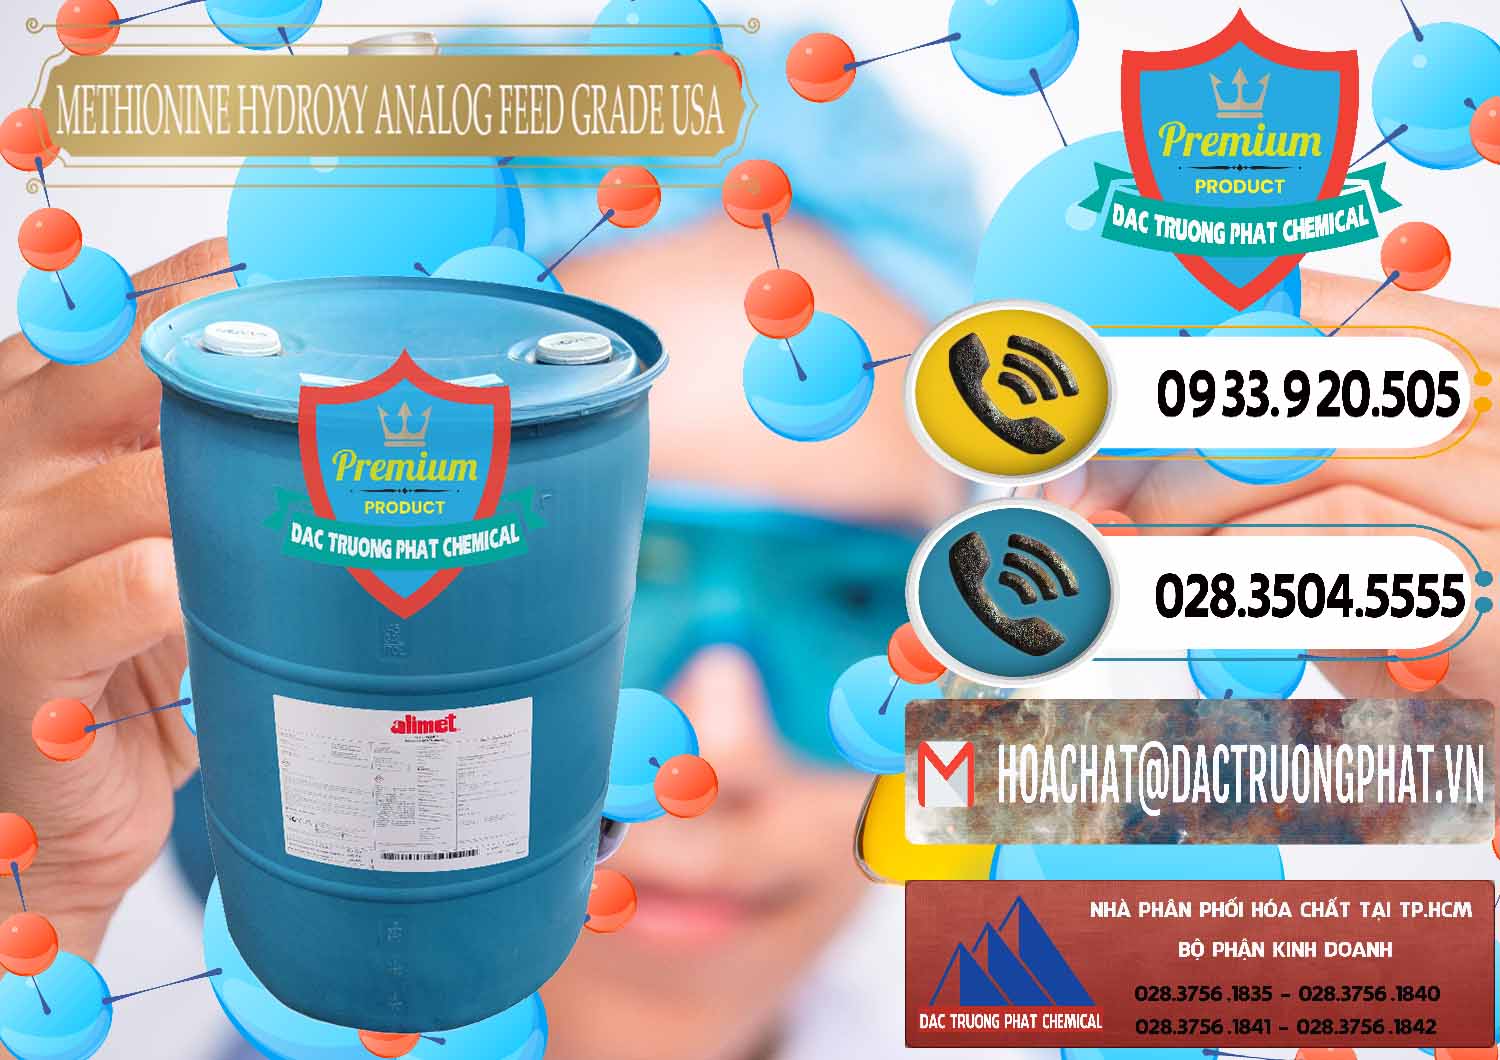 Công ty bán và cung cấp Methionine Nước - Dạng Lỏng Novus Alimet Mỹ USA - 0316 - Cty chuyên cung ứng & phân phối hóa chất tại TP.HCM - hoachatdetnhuom.vn